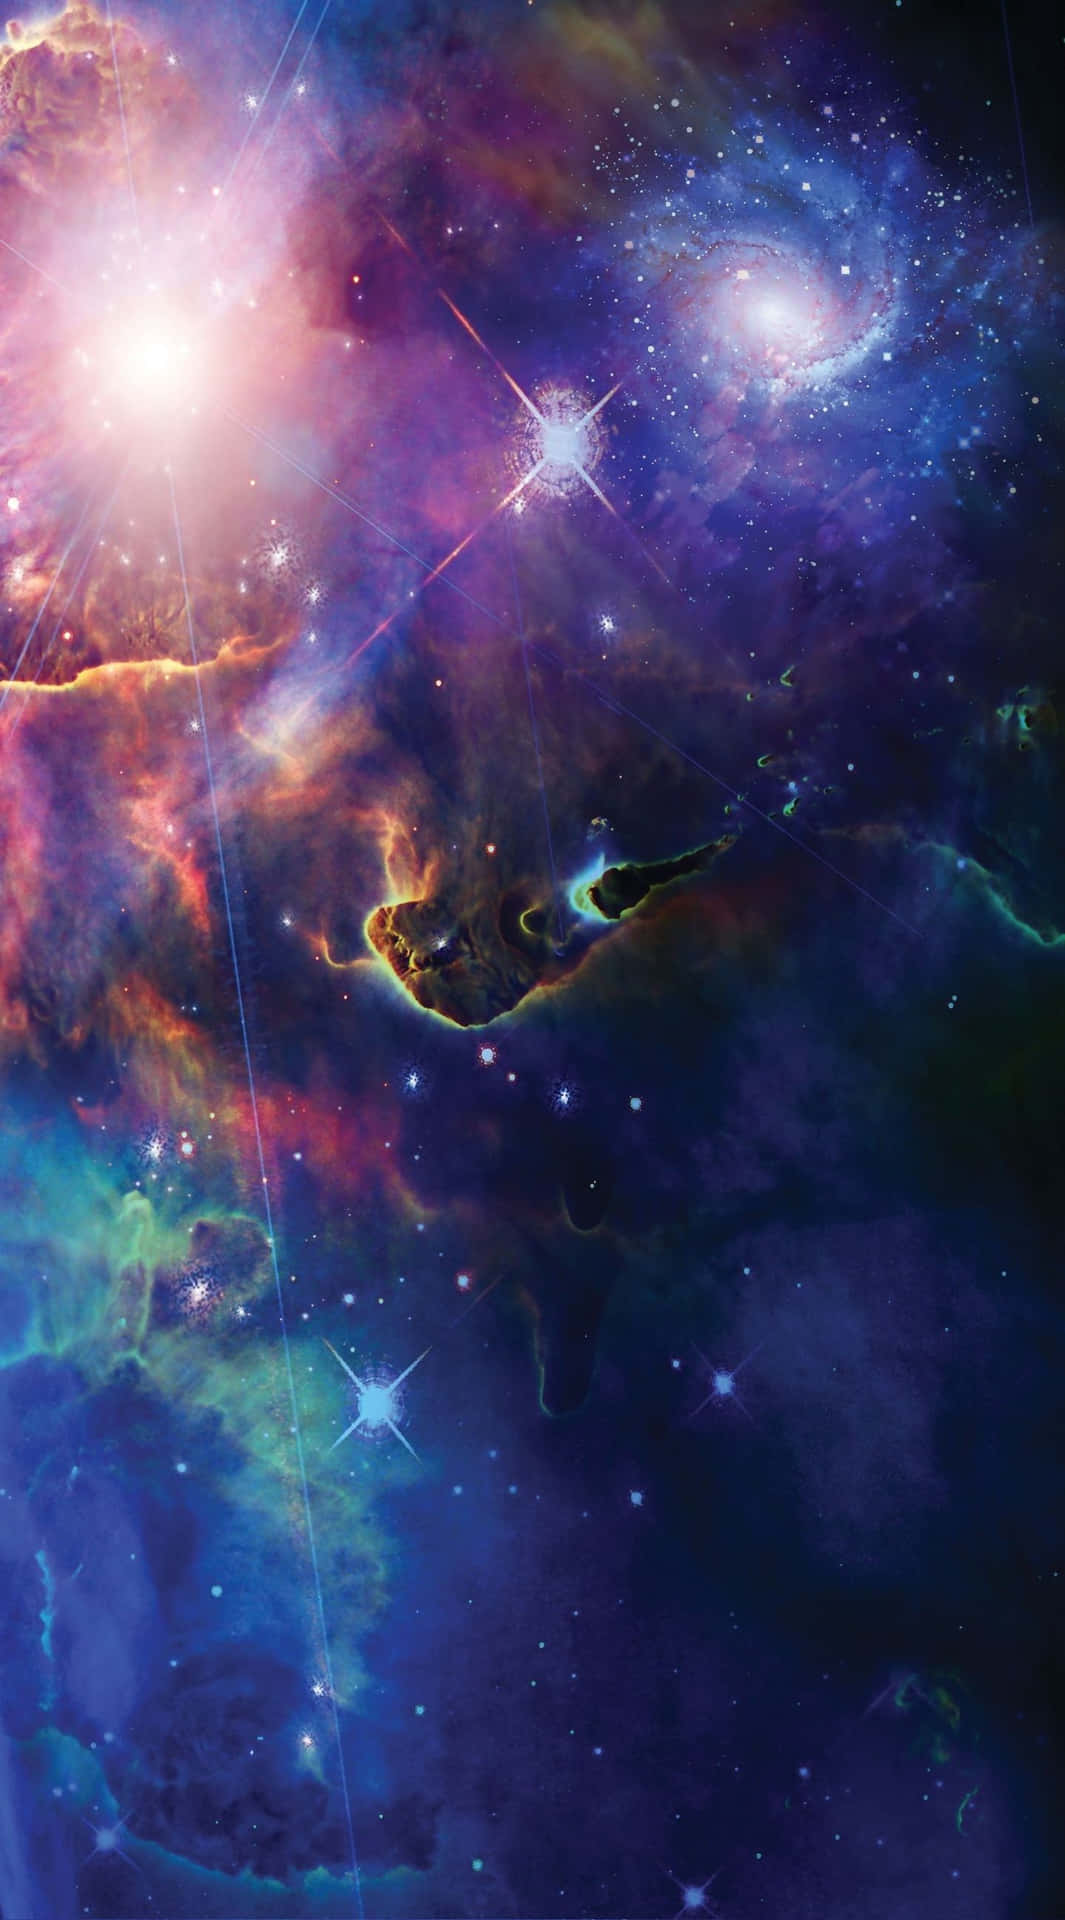 Nebula&Galaxy Space Background